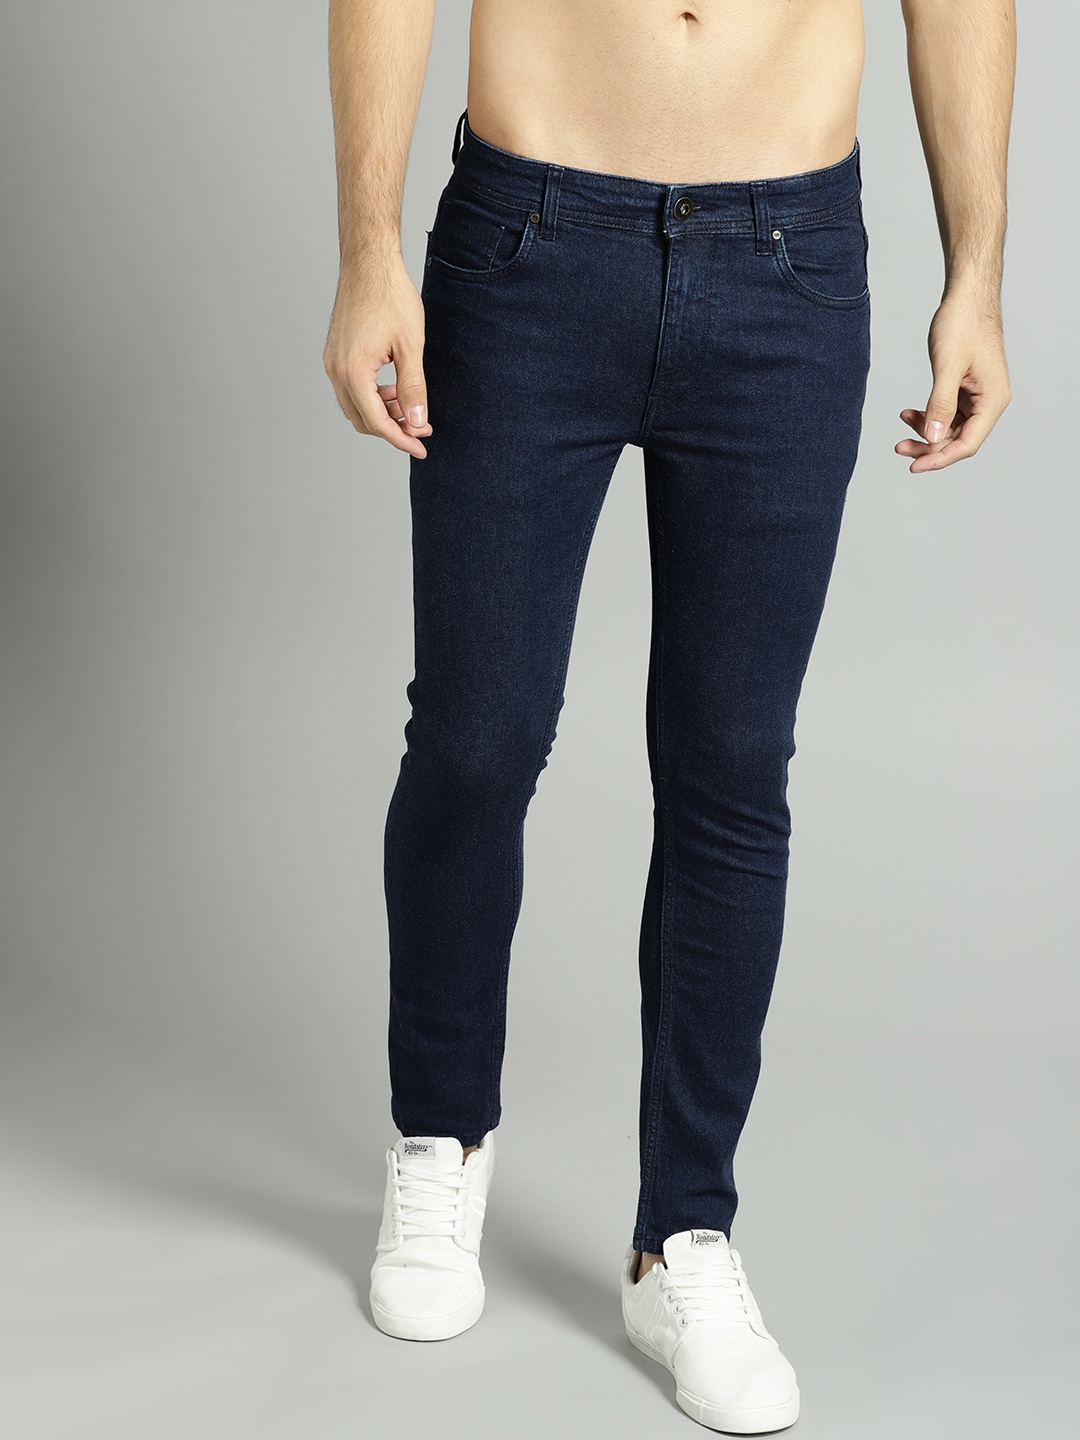 firkant Diplomatiske spørgsmål drag Buy Roadster Men Navy Blue Skinny Fit Mid Rise Clean Look Stretchable Jeans  - Jeans for Men 6544944 | Myntra